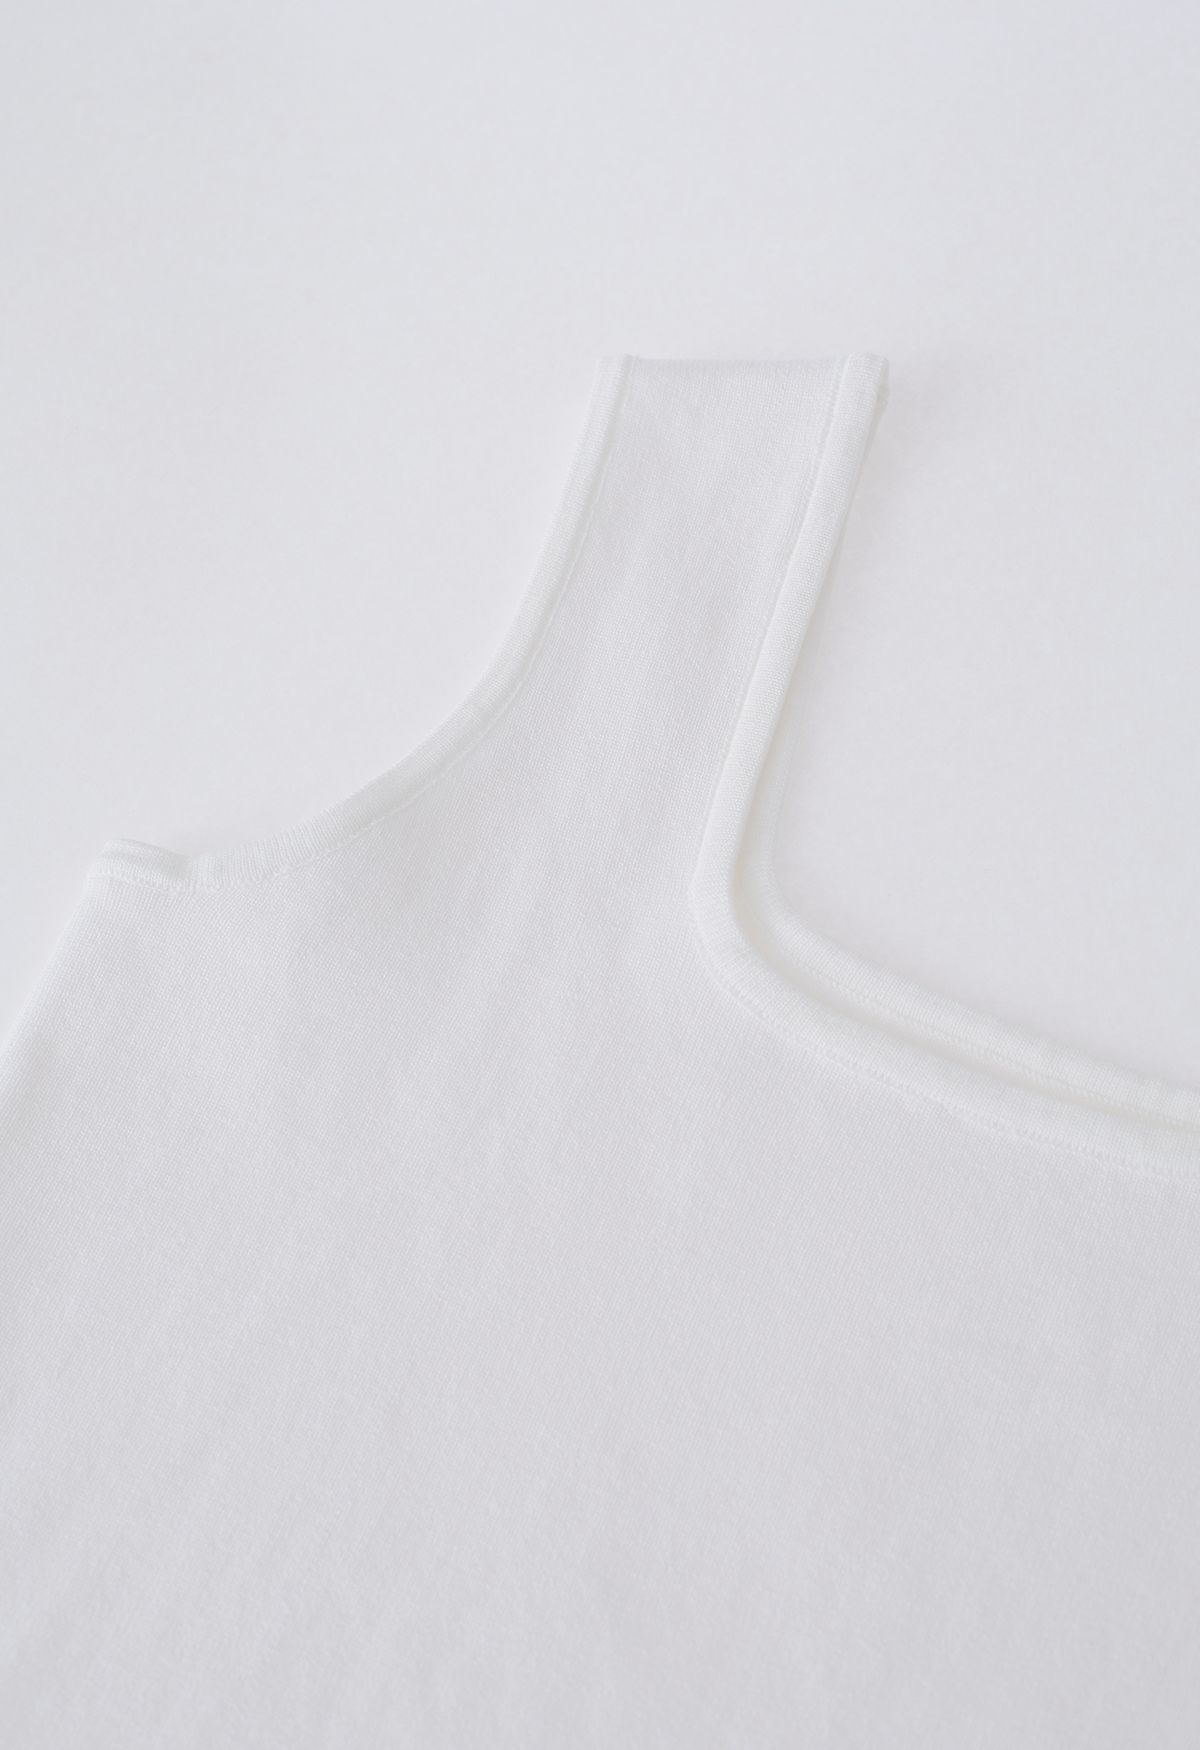 Camiseta sin mangas de punto con cuello cuadrado elegante en blanco